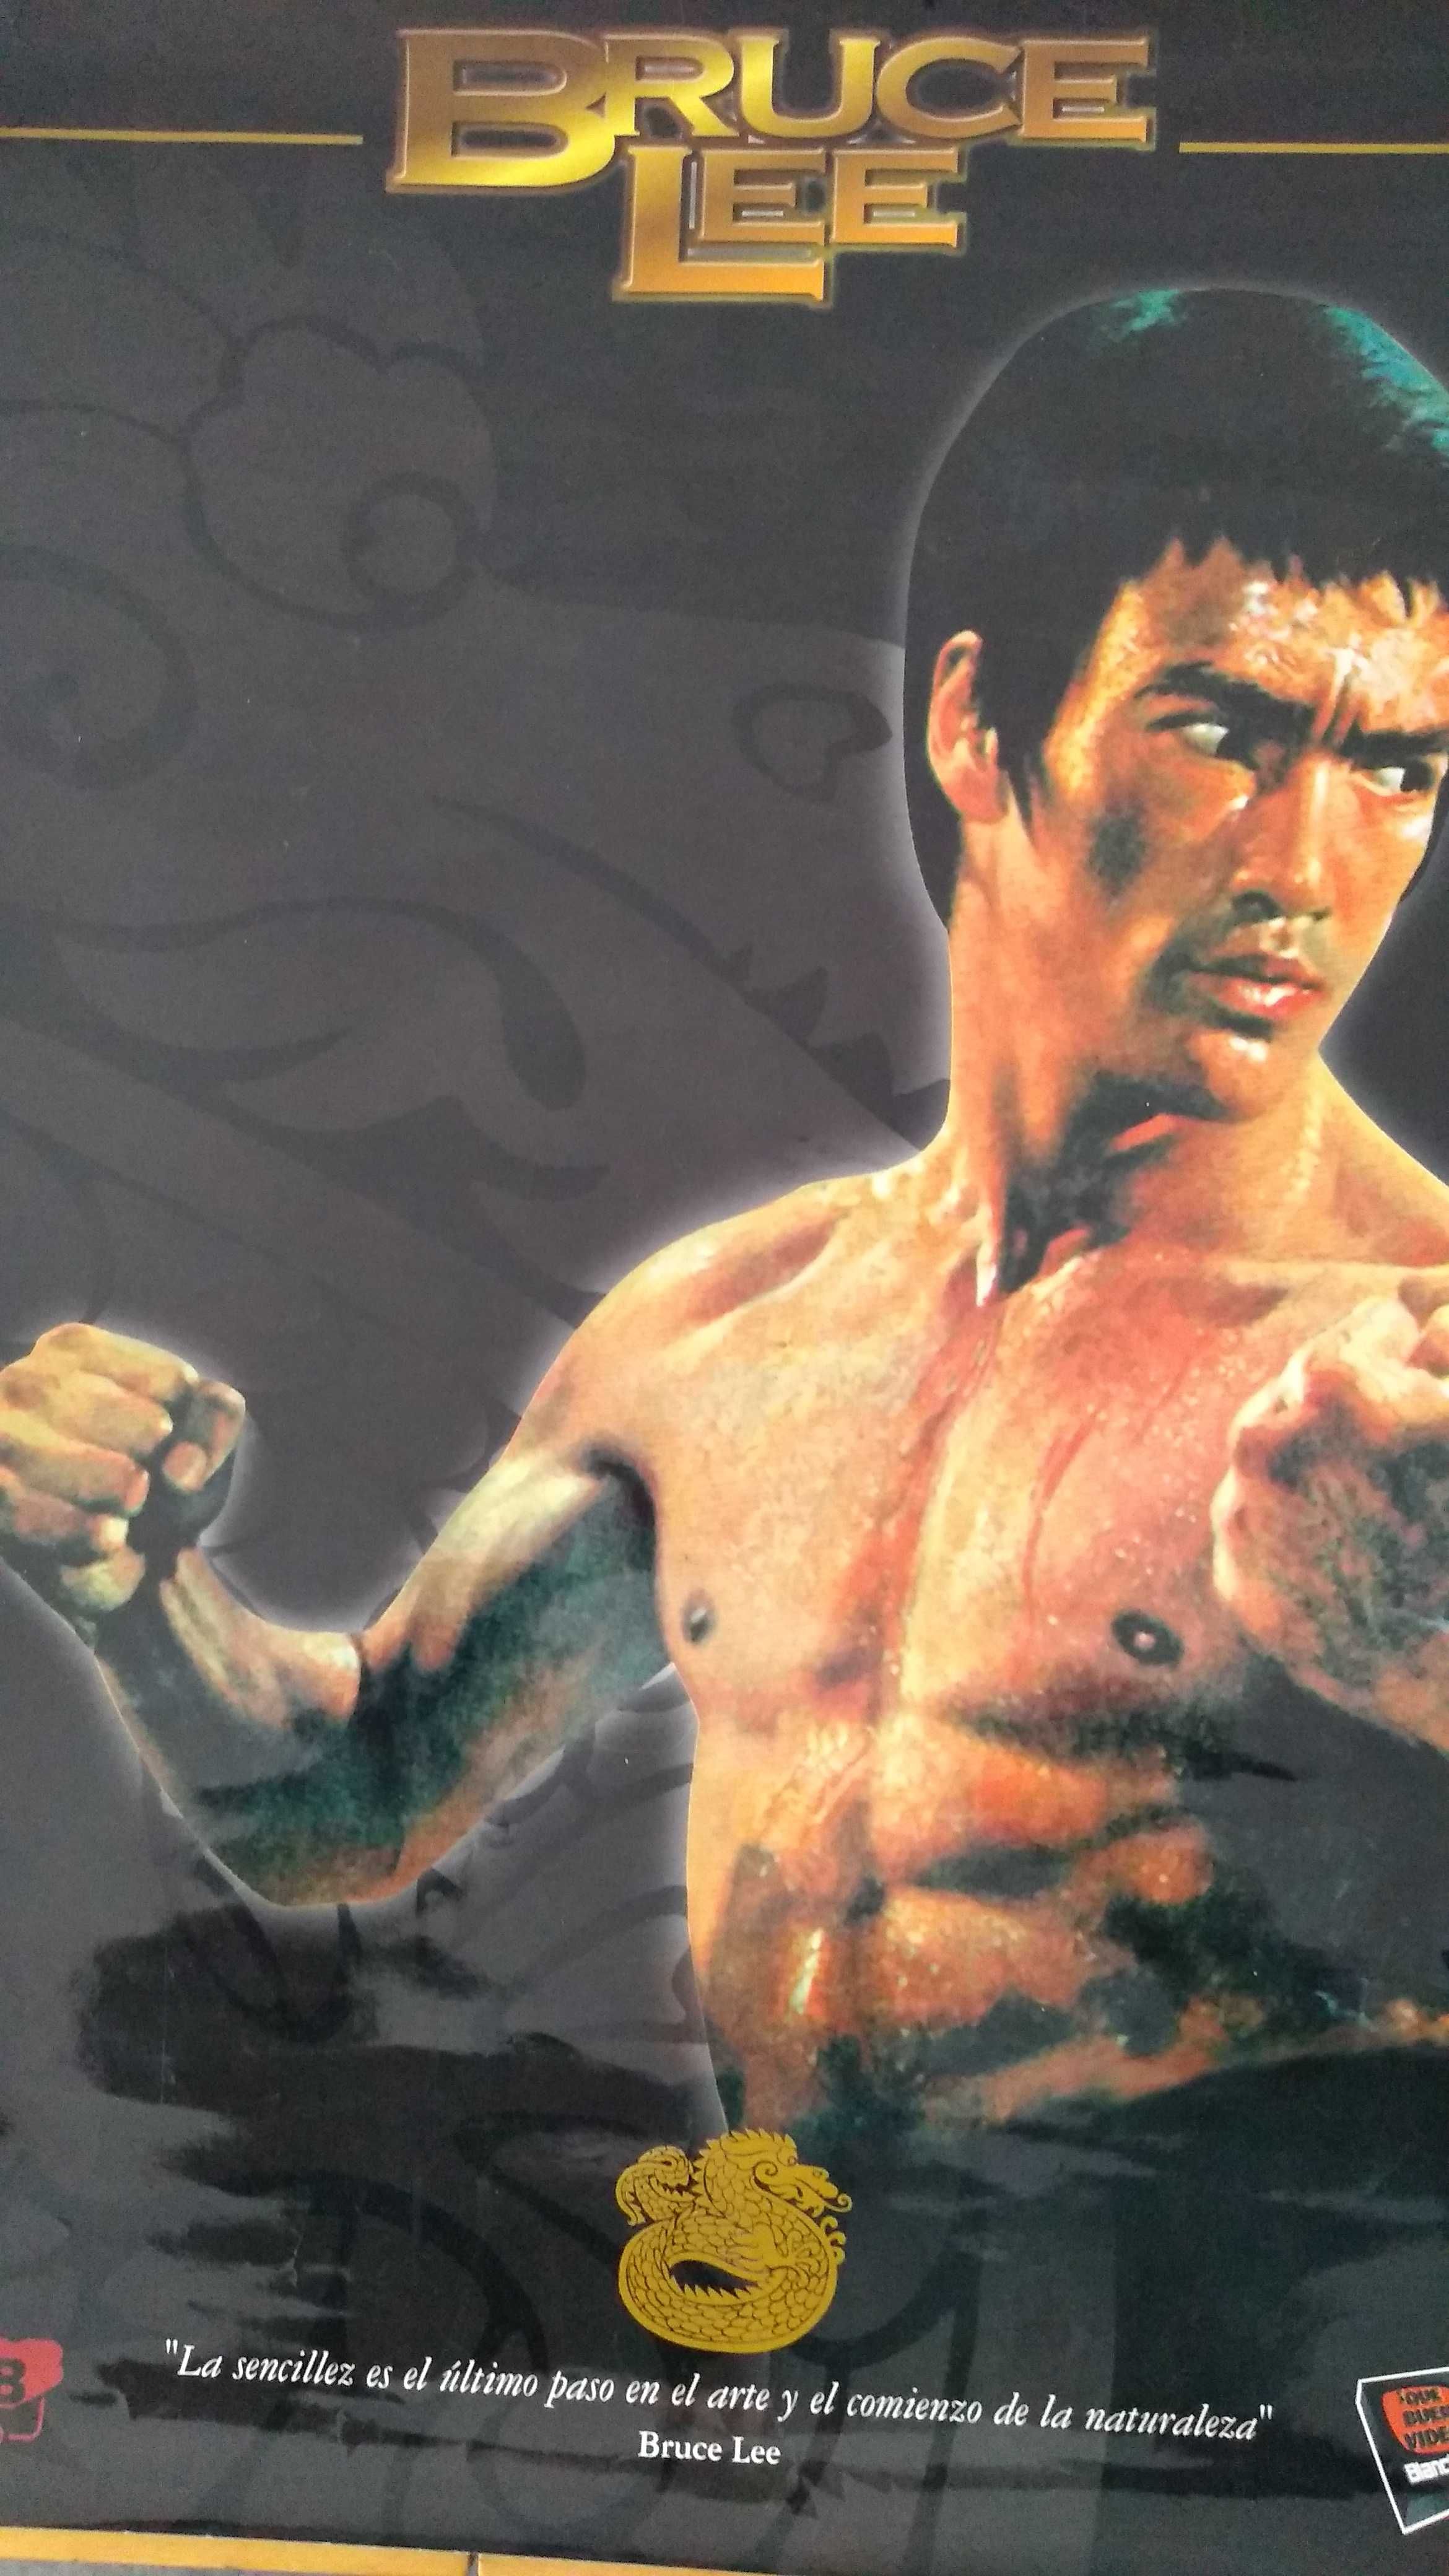 Poster raro do Bruce Lee